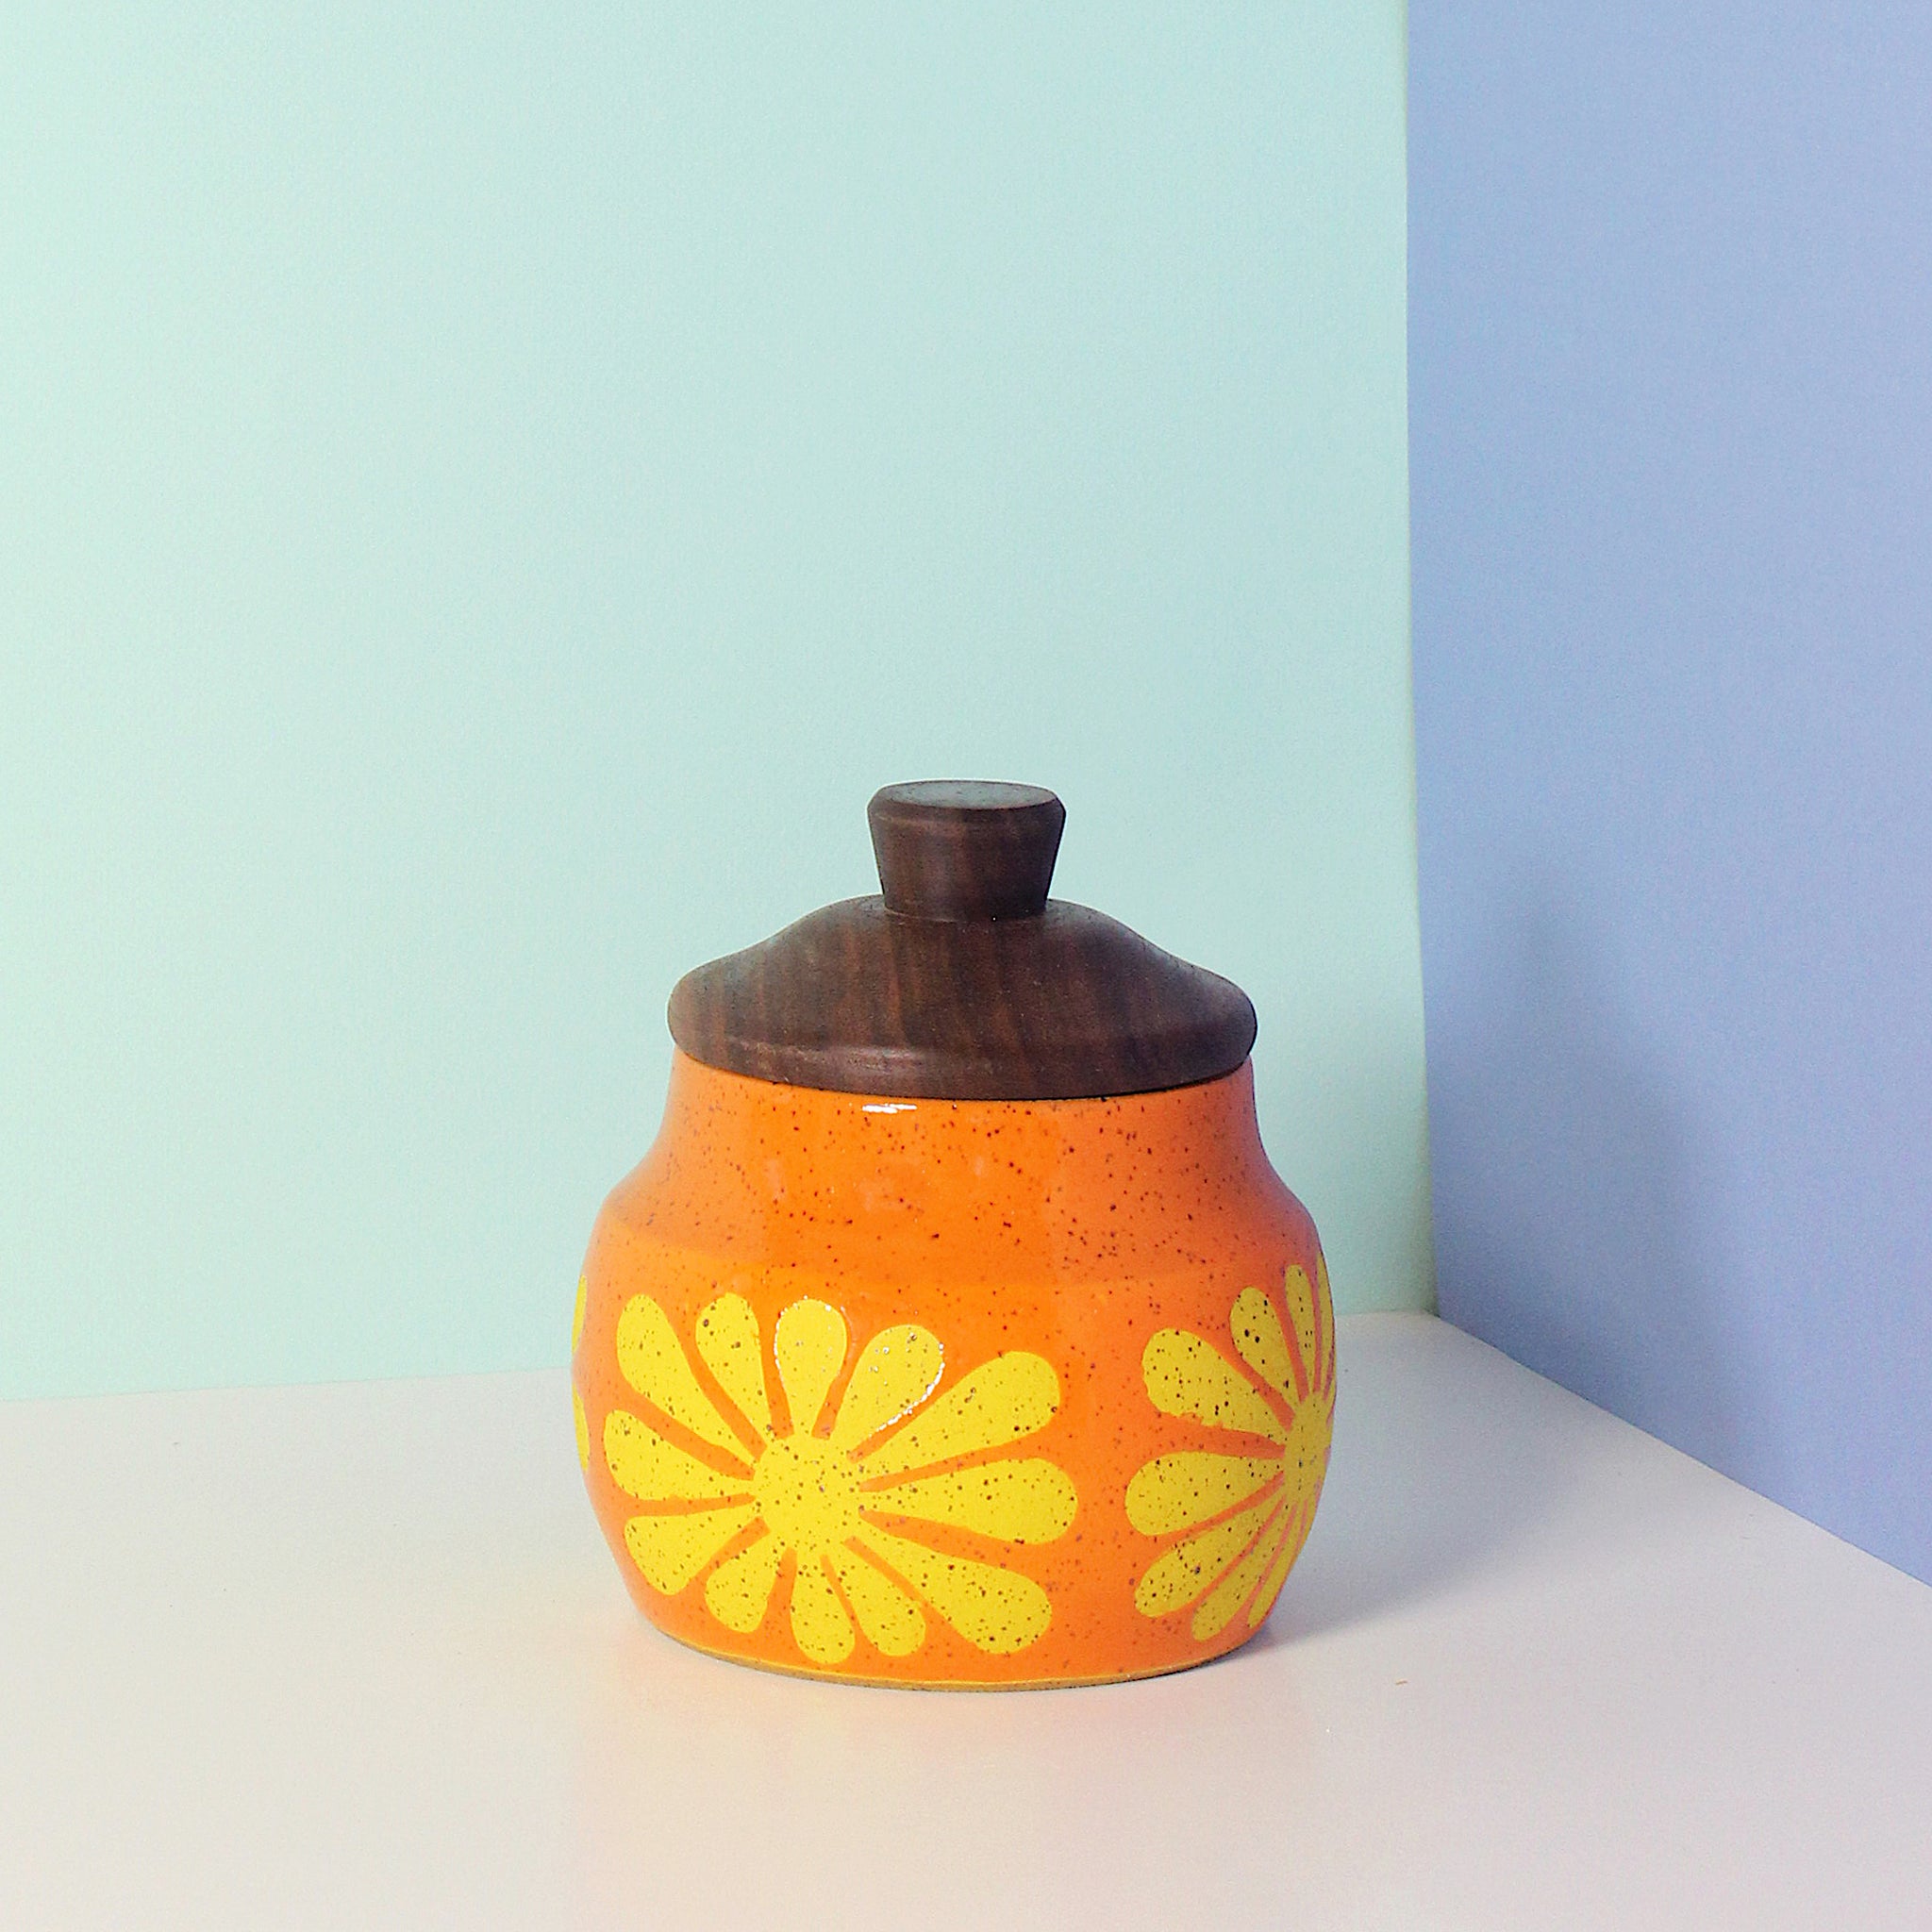 Glazed Stoneware Jar with Mod Flower Pattern